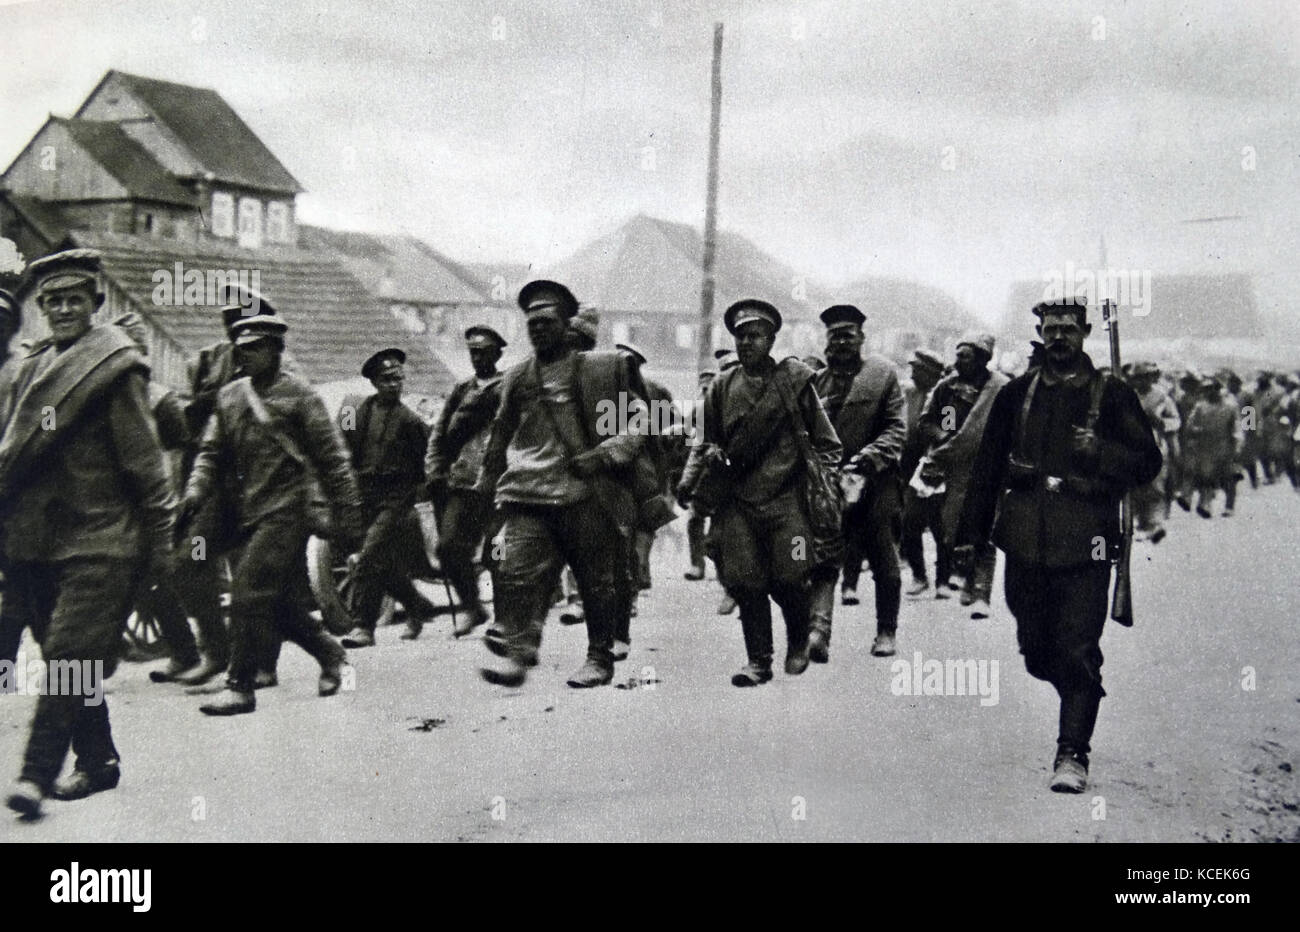 Foto von russischen Kriegsgefangenen auf dem Weg zu einem deutschen Gefangenenlager während des Zweiten Weltkrieges ein. Vom 20. Jahrhundert Stockfoto